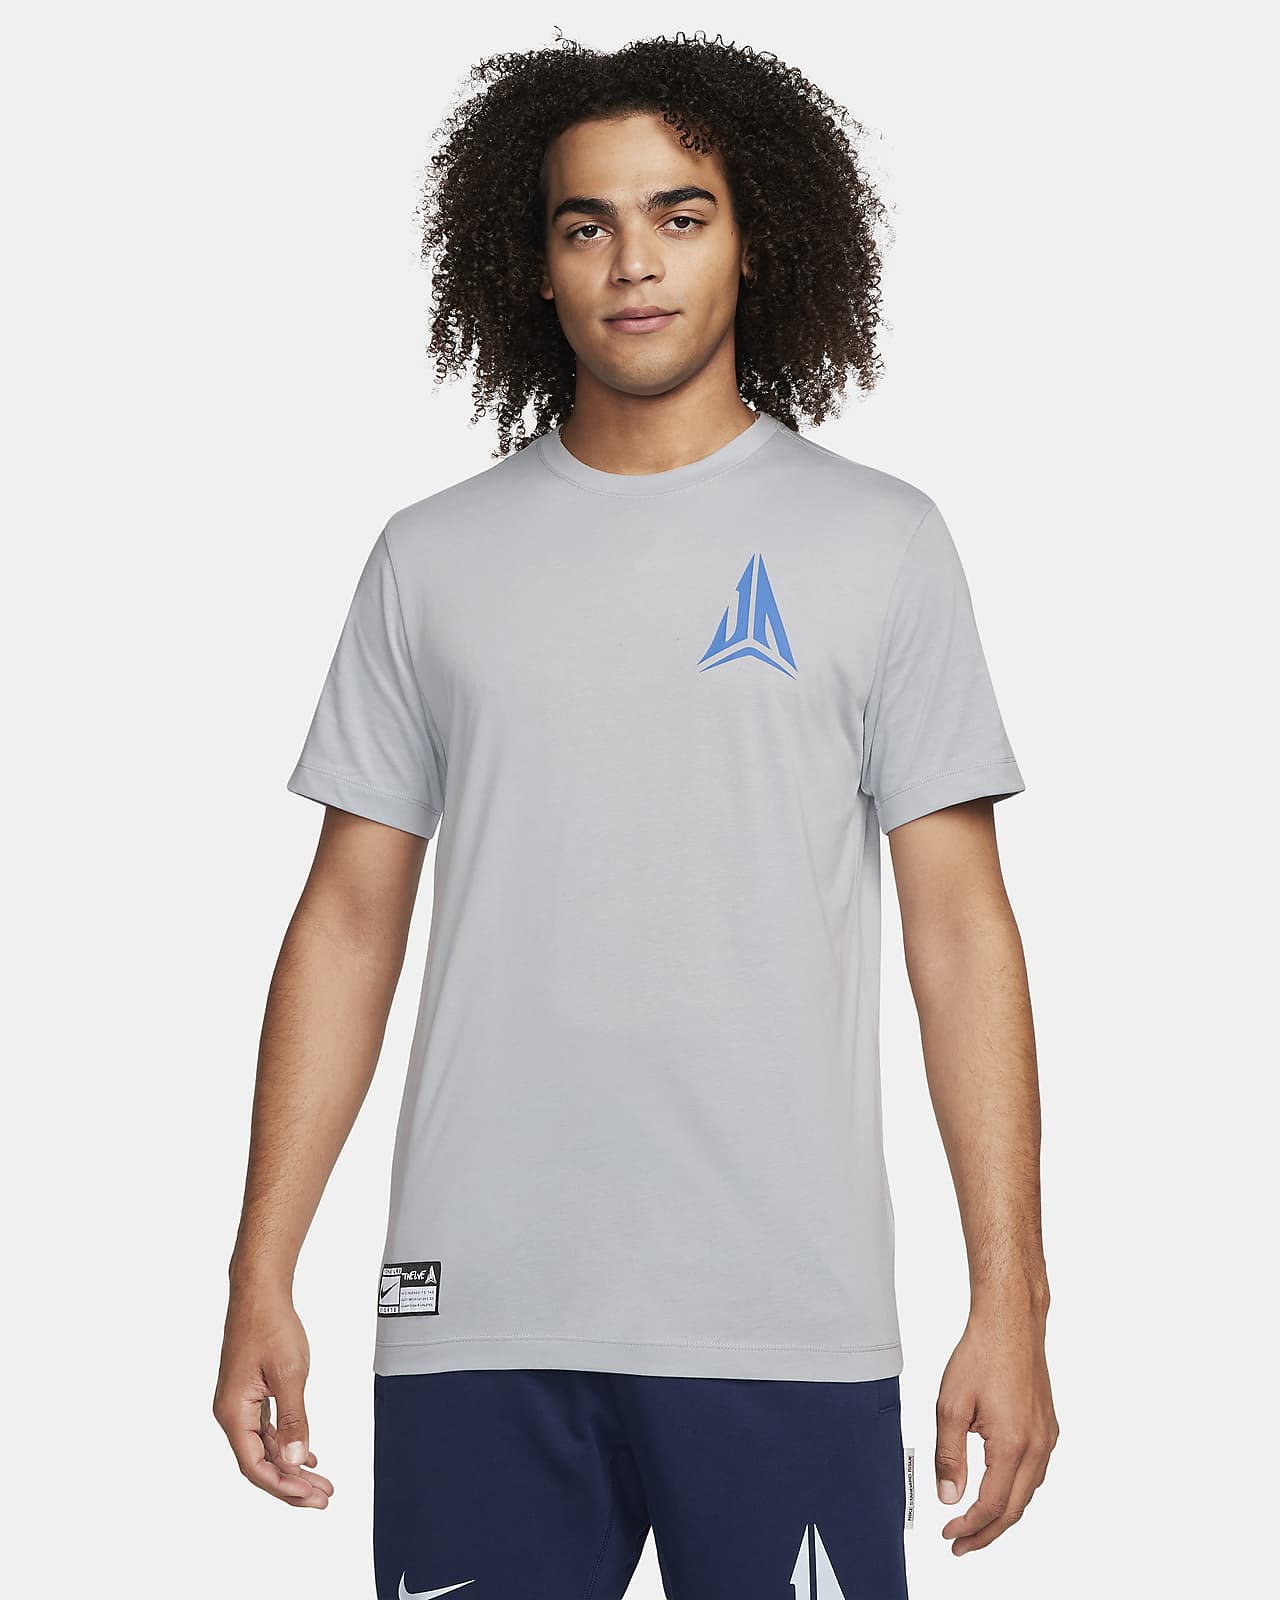 JA Men's Nike Dri-FIT Basketball T-Shirt